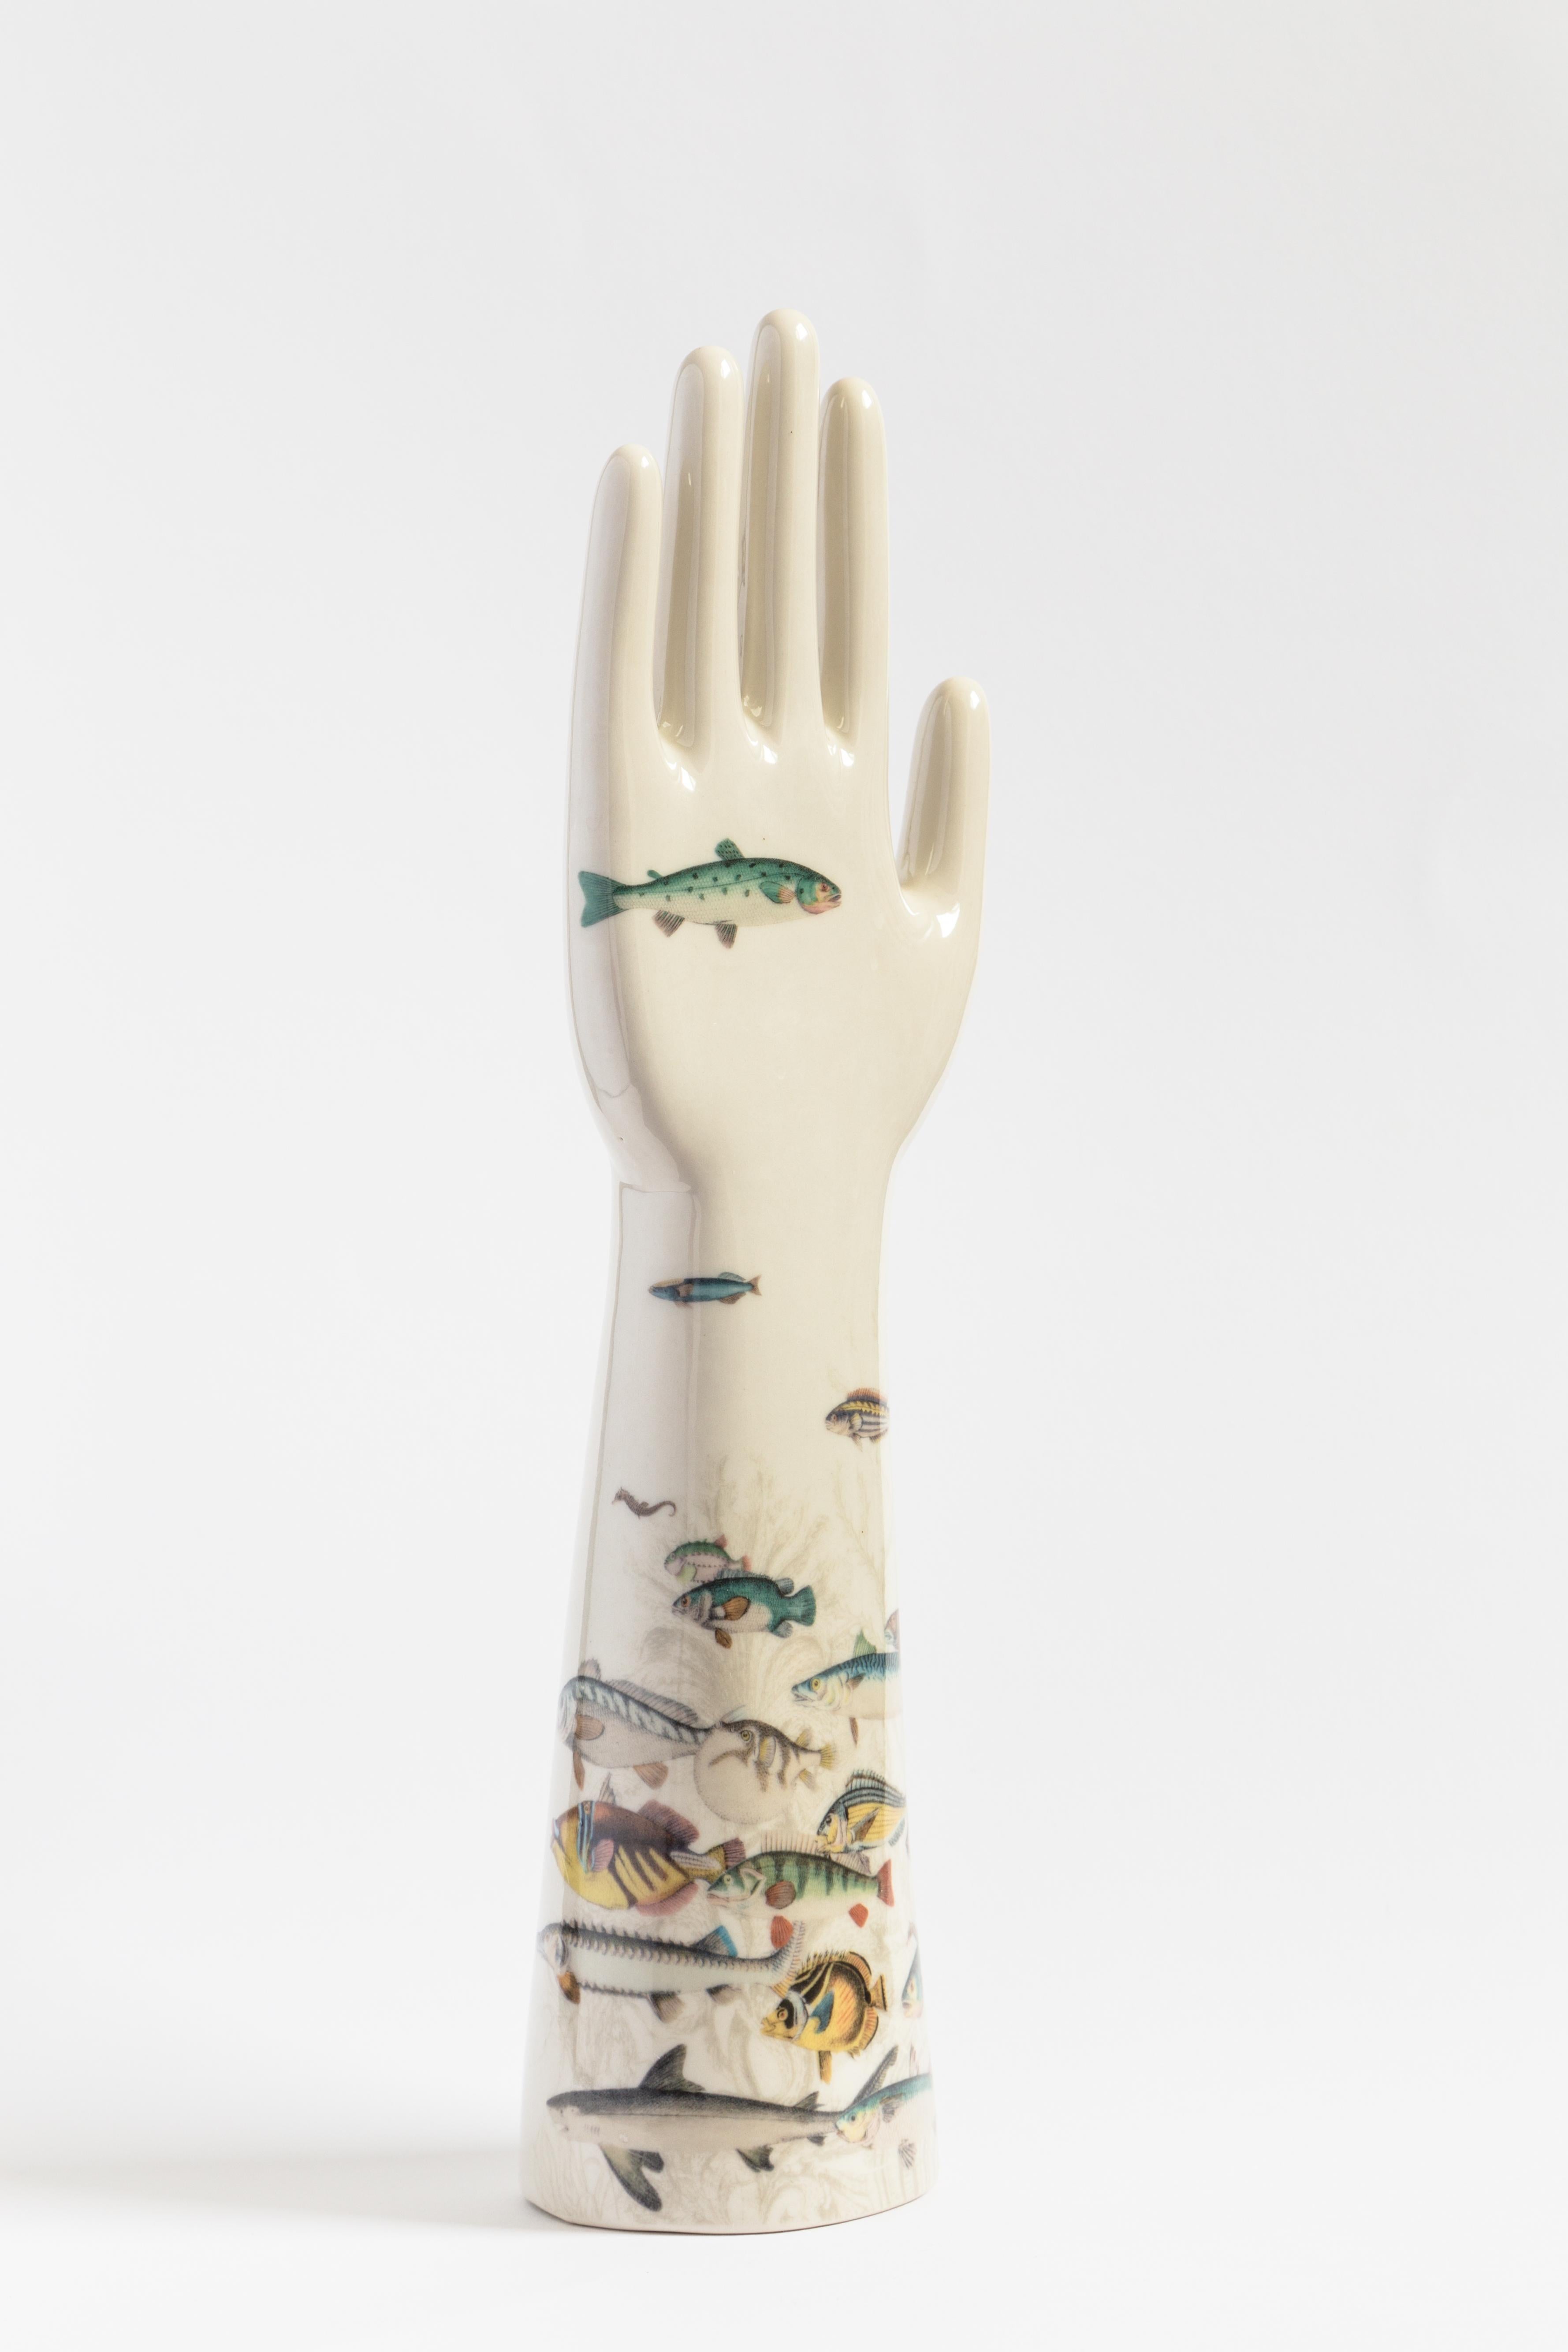 Diese auffällige Skulptur ist Teil der Serie Anatomica von Vito Nesta, die dekorative Objekte mit einfachen und essentiellen anatomischen Formen umfasst, die sich durch kräftige, kontrastreiche Farben und modernes Flair auszeichnen. Diese Skulptur